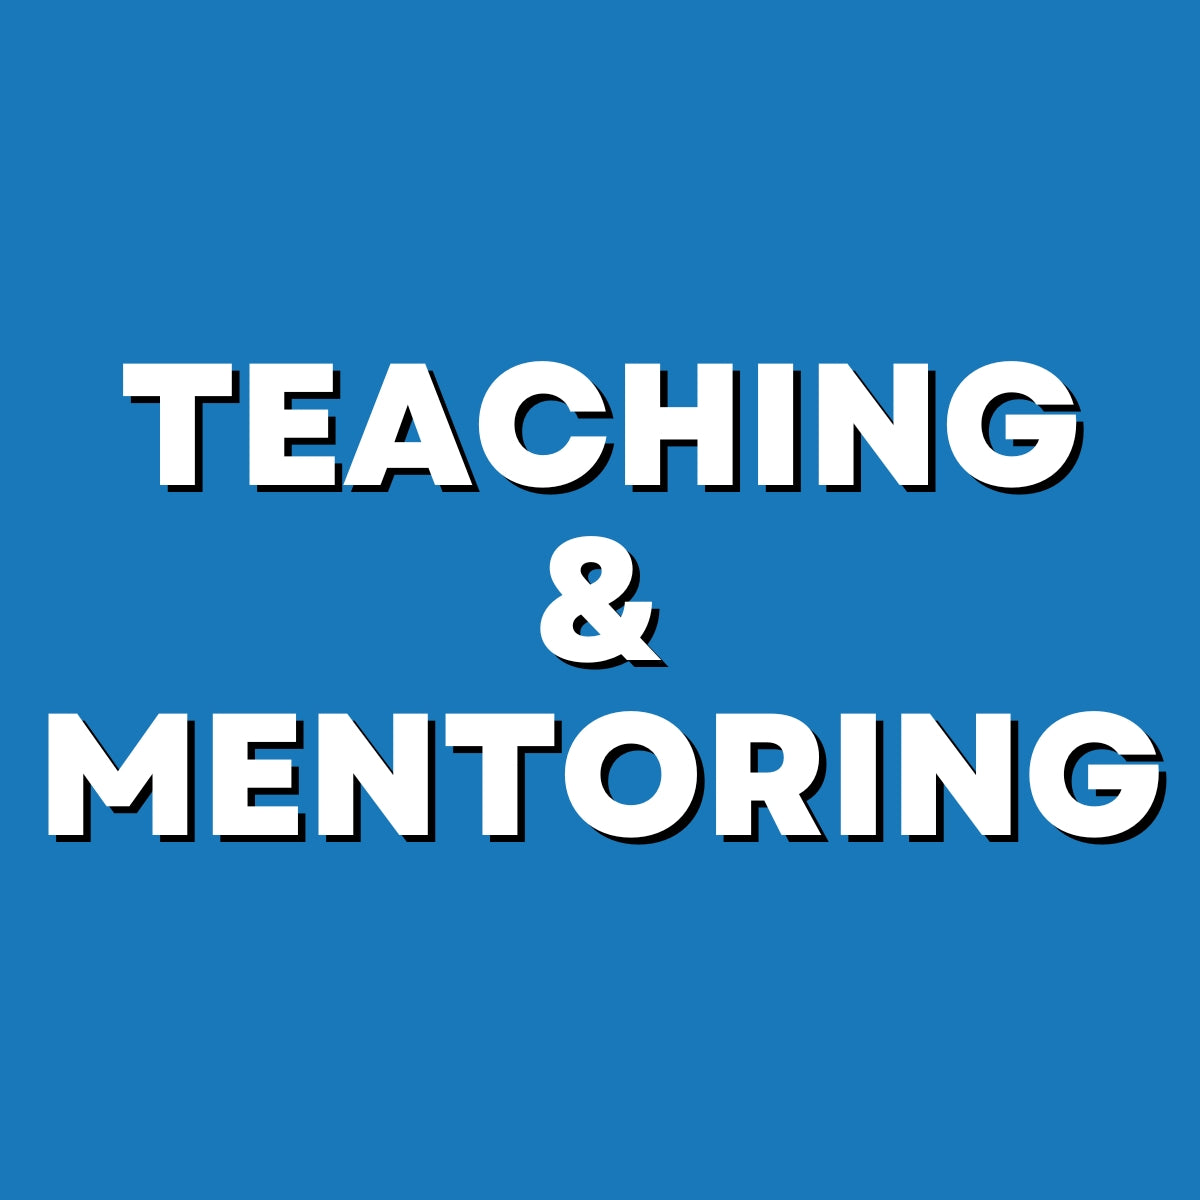 Teaching & Mentoring